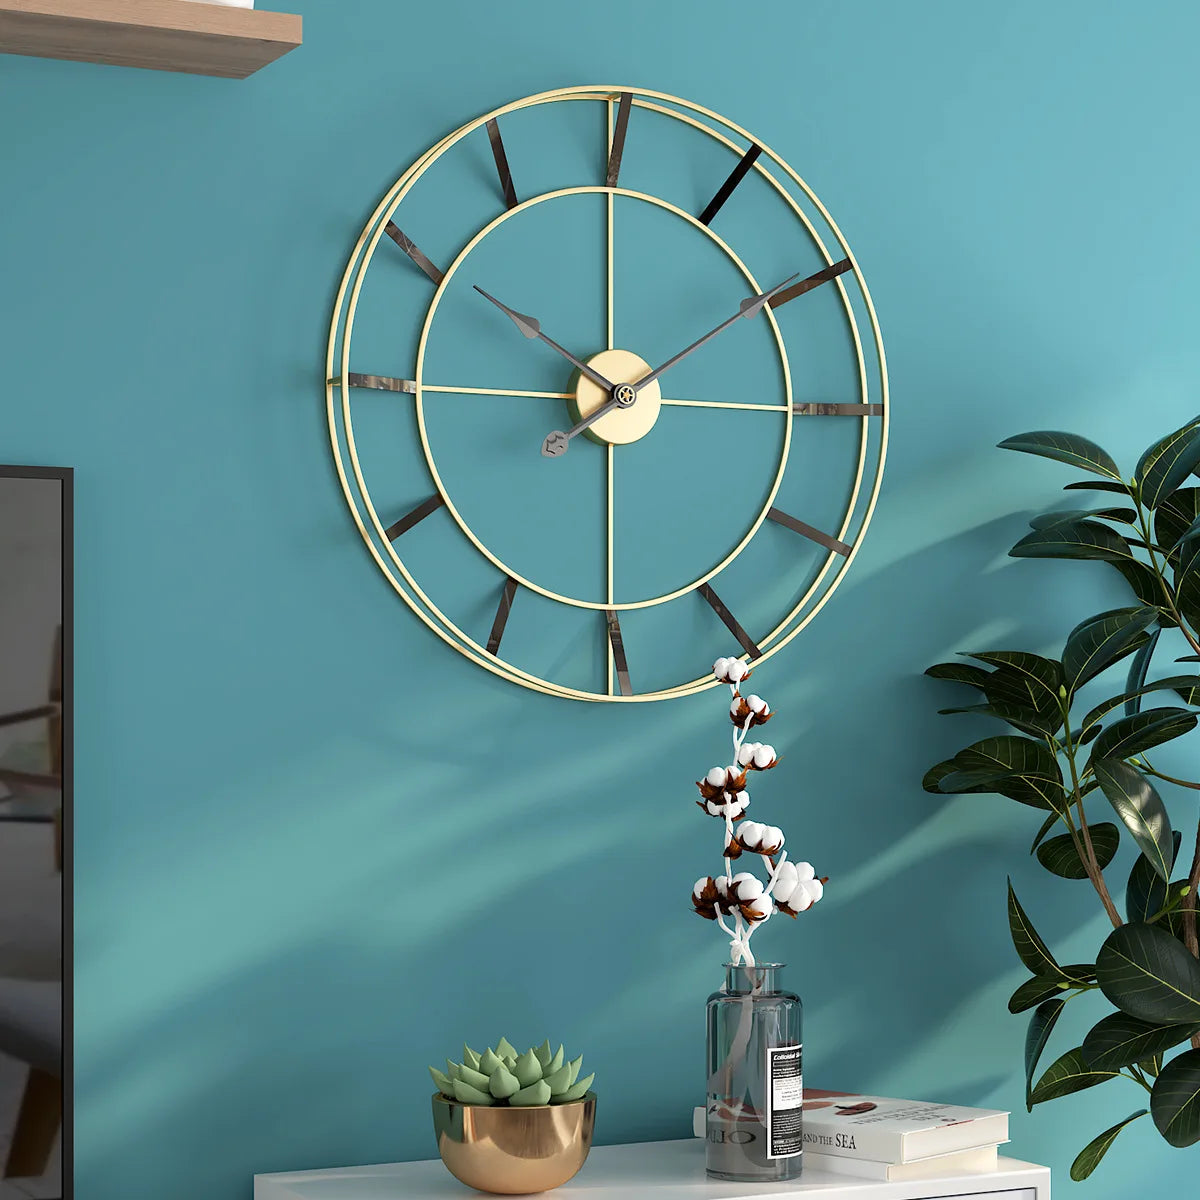 Minimalist Geometric Wall Clock